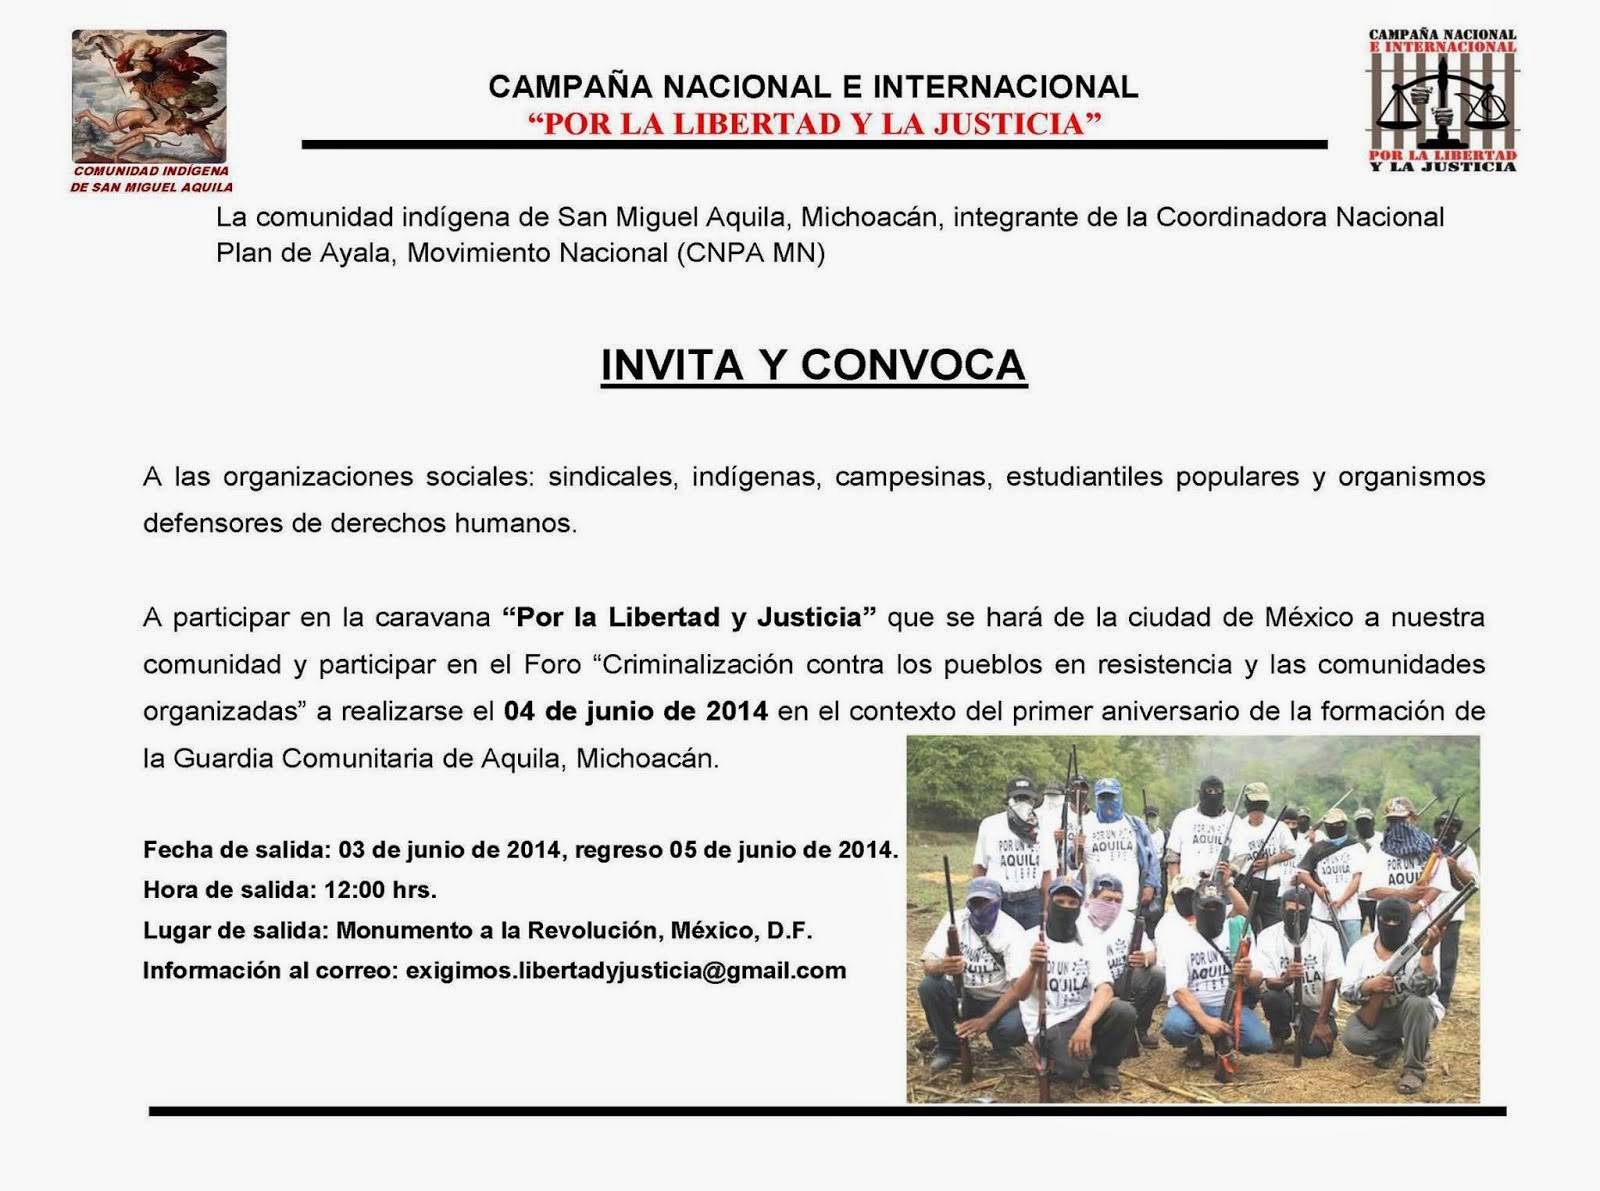 FORO de Denuncia y Apoyo a Aquila Michoacán MOCRI-CNPA-MN 3-5 Junio